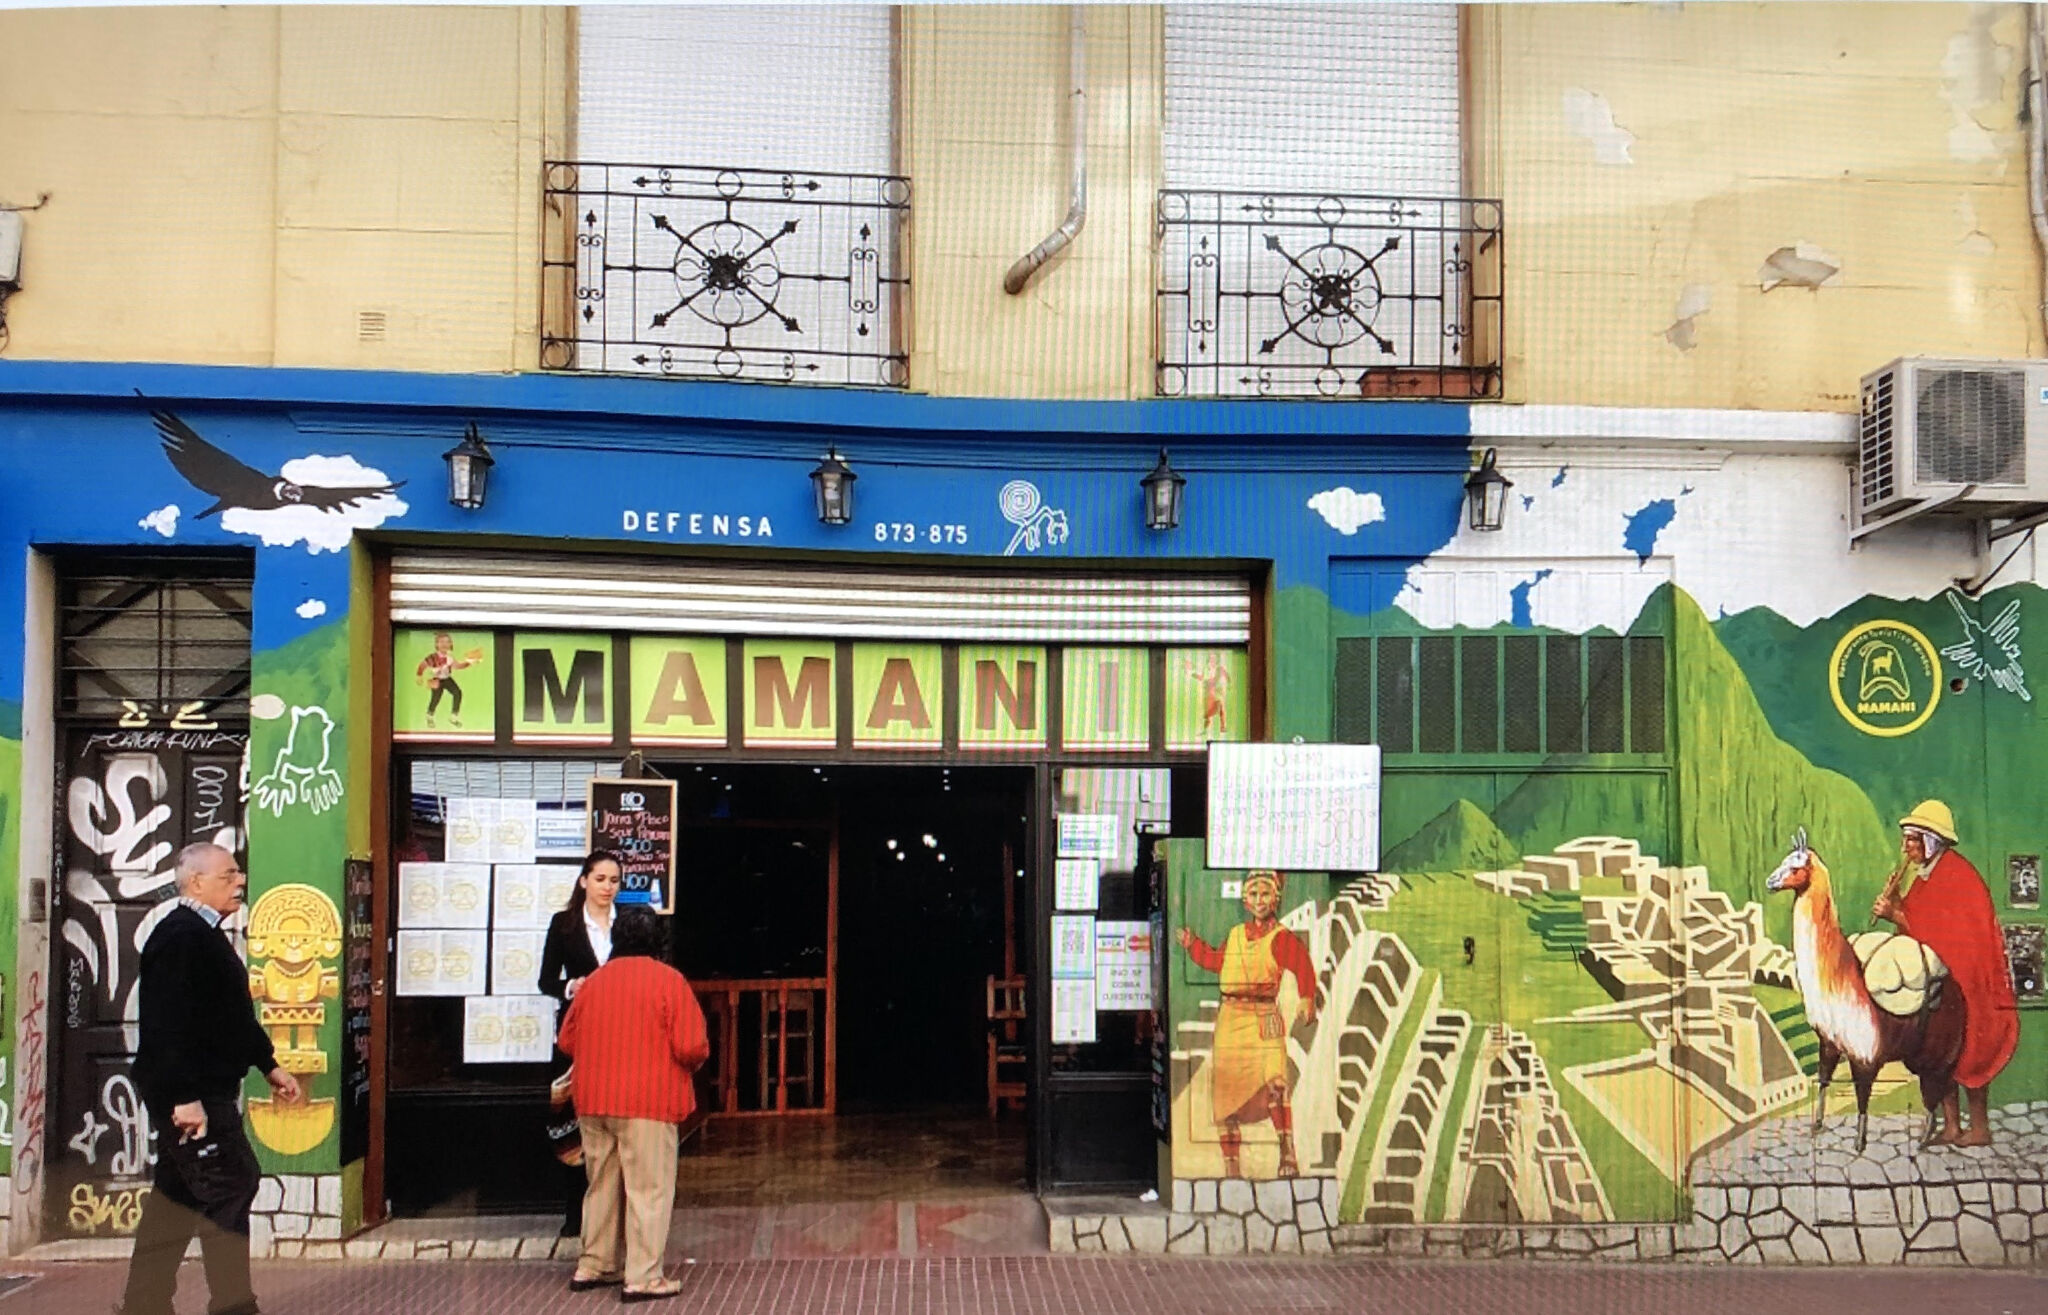 Unknown - Buenos Aires&mdash;Mamani Peruan Restaurant